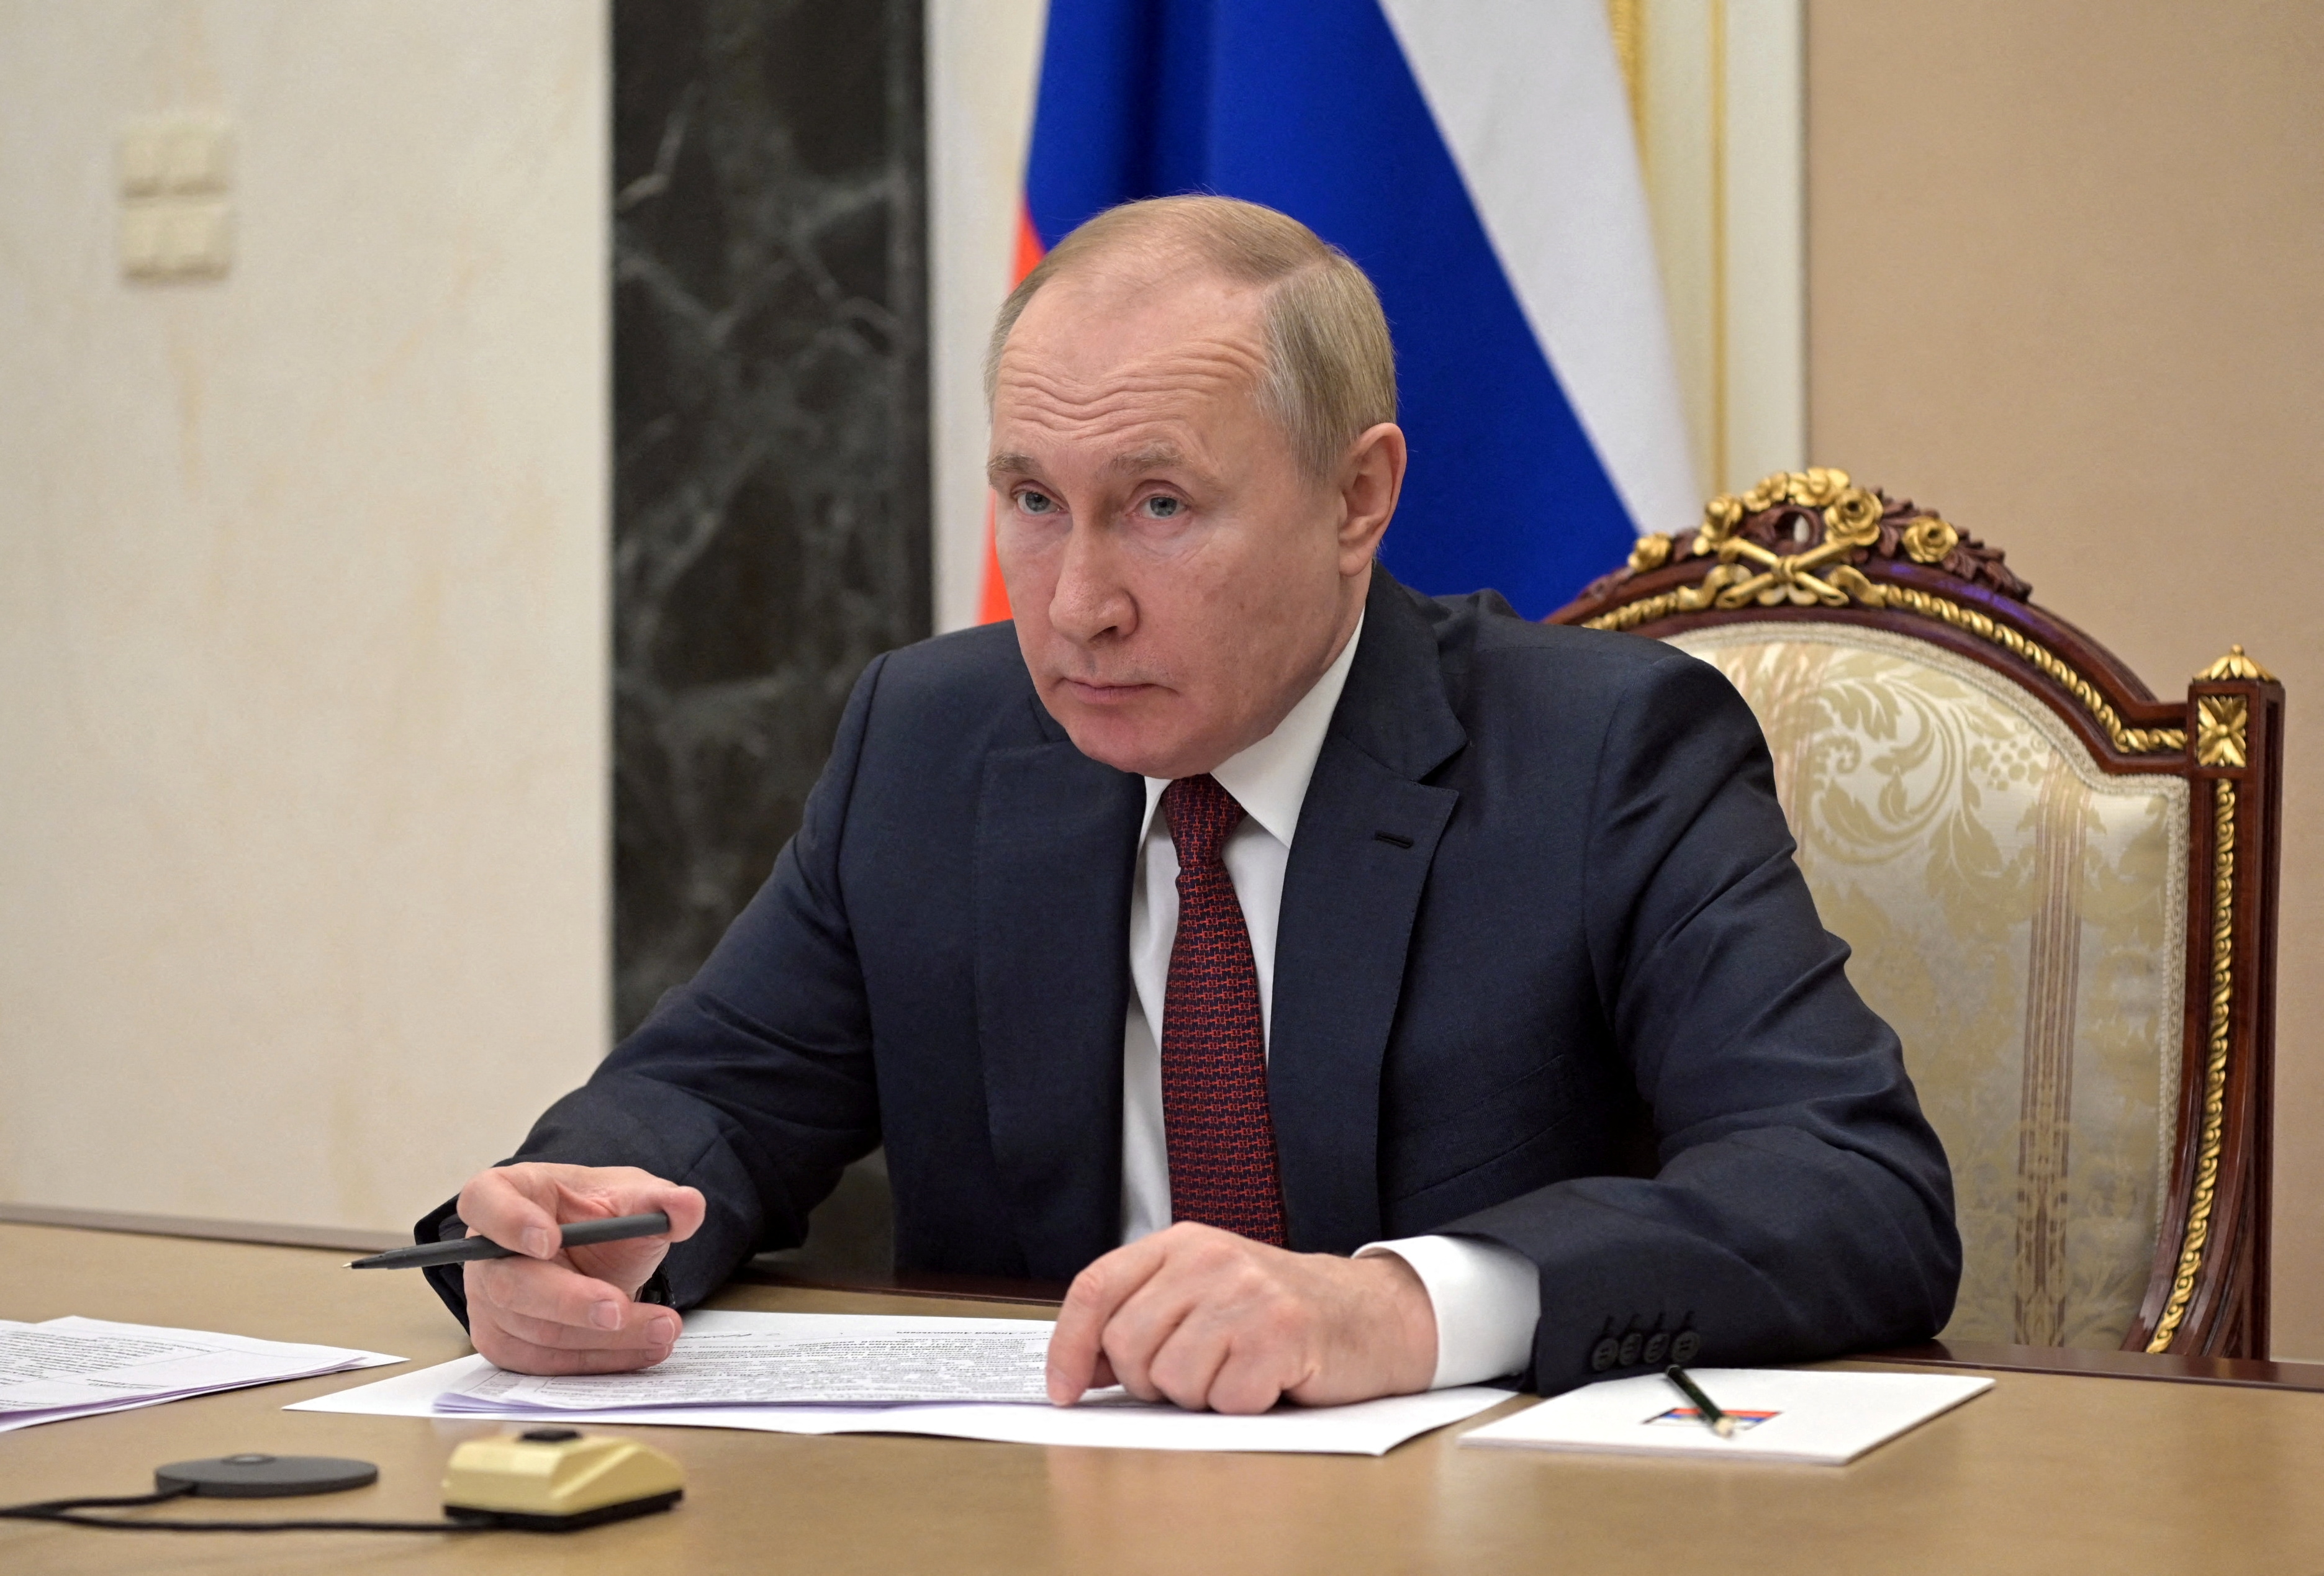 Ruski predsednik Vladimir Putin se udeležuje srečanja s člani vlade prek video povezave v Moskvi, Rusija, 12. januarja 2022. Sputnik/Aleksej Nikolski/Kremelj prek REUTERS